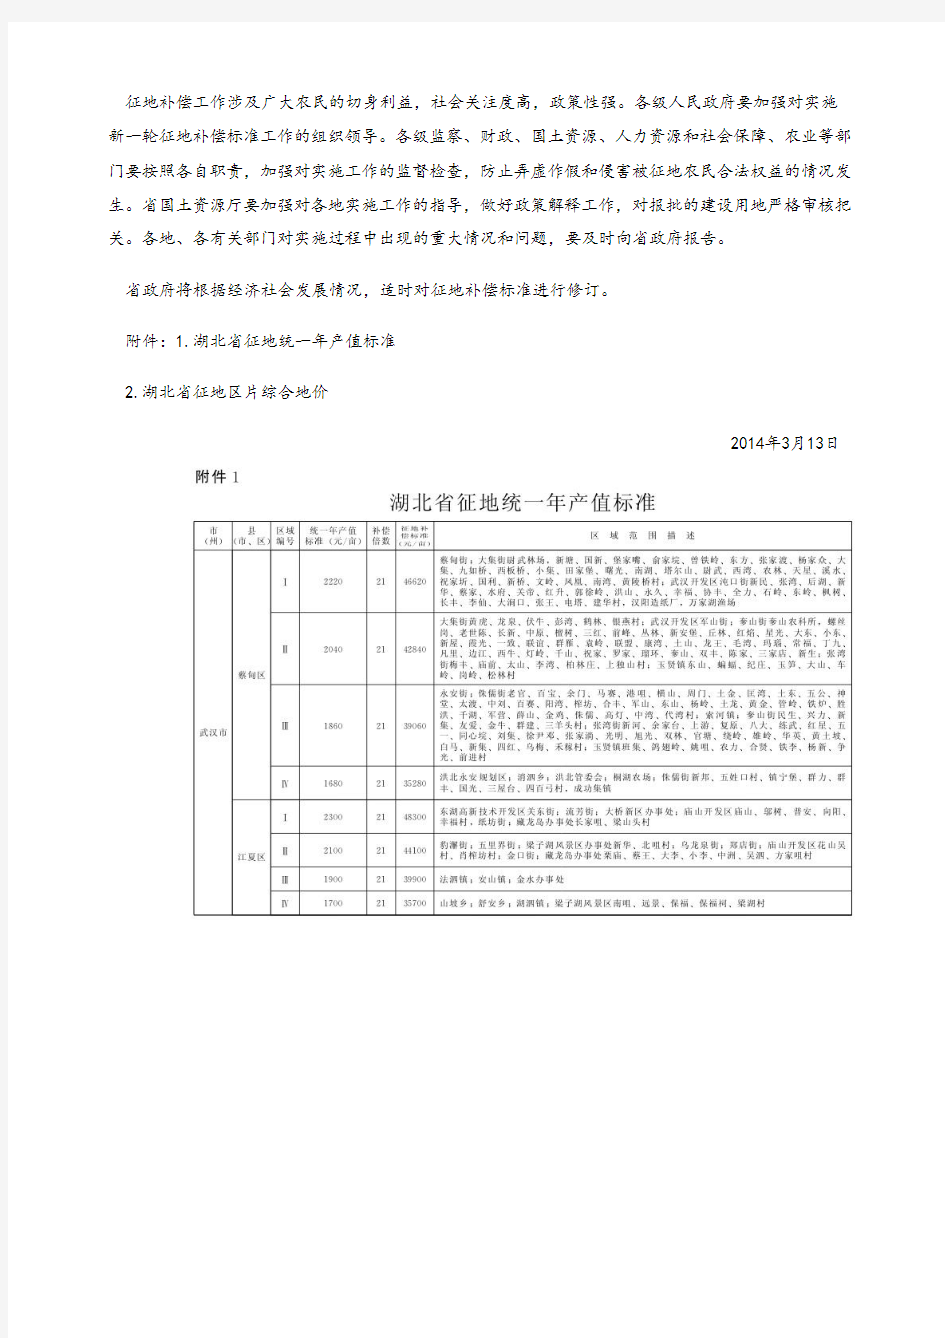 湖北省人民政府关于公布湖北省征地统一年产值标准和区片综合地价的通知